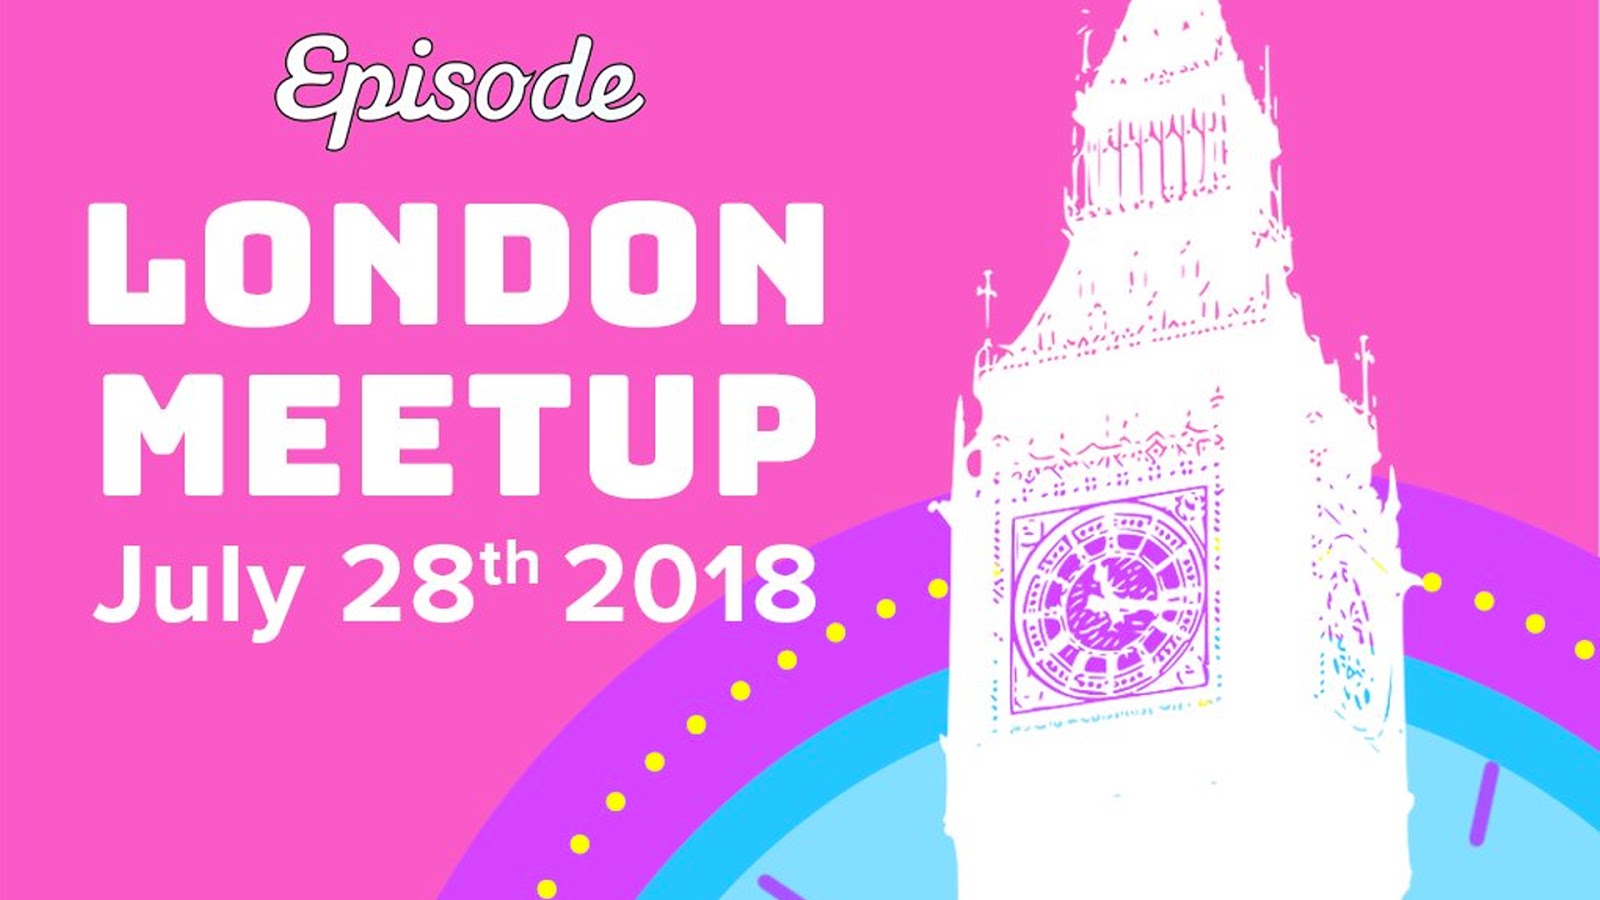 Episode London Meetup!